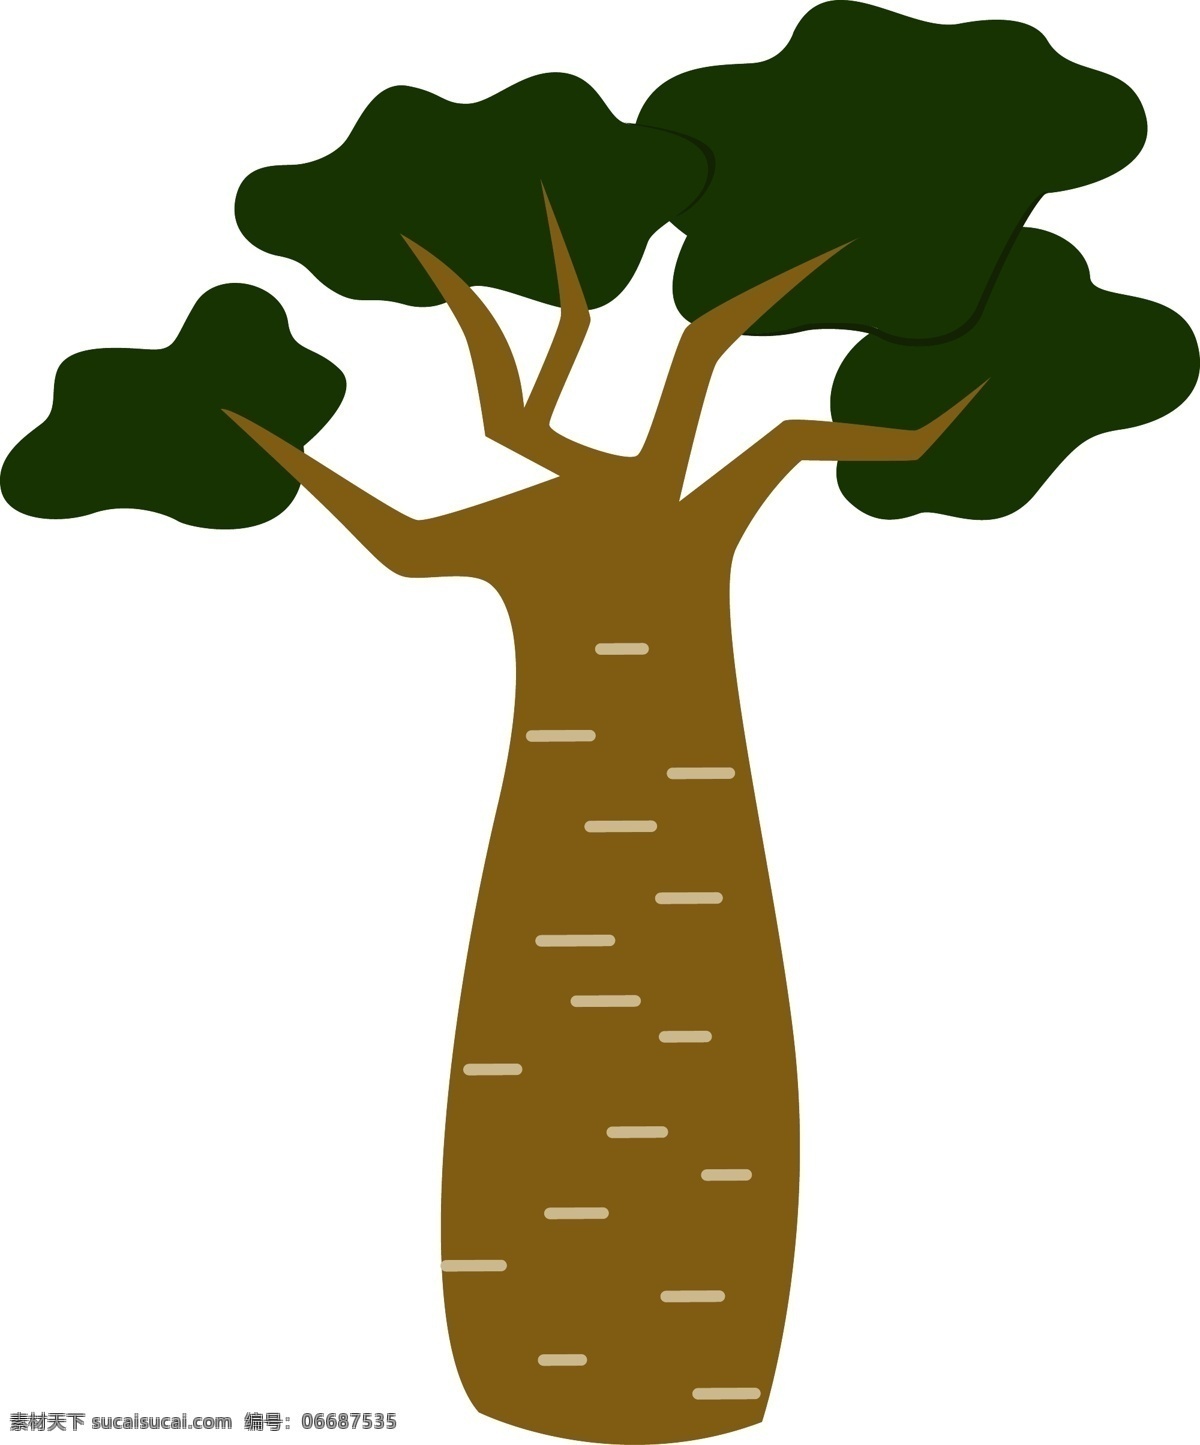 卡通 矢量 瓶子 树 扁平化 插画 商用 元素 植物 大树 瓶子树 扁平化植物 矢量大树素材 树卡通可爱 平面